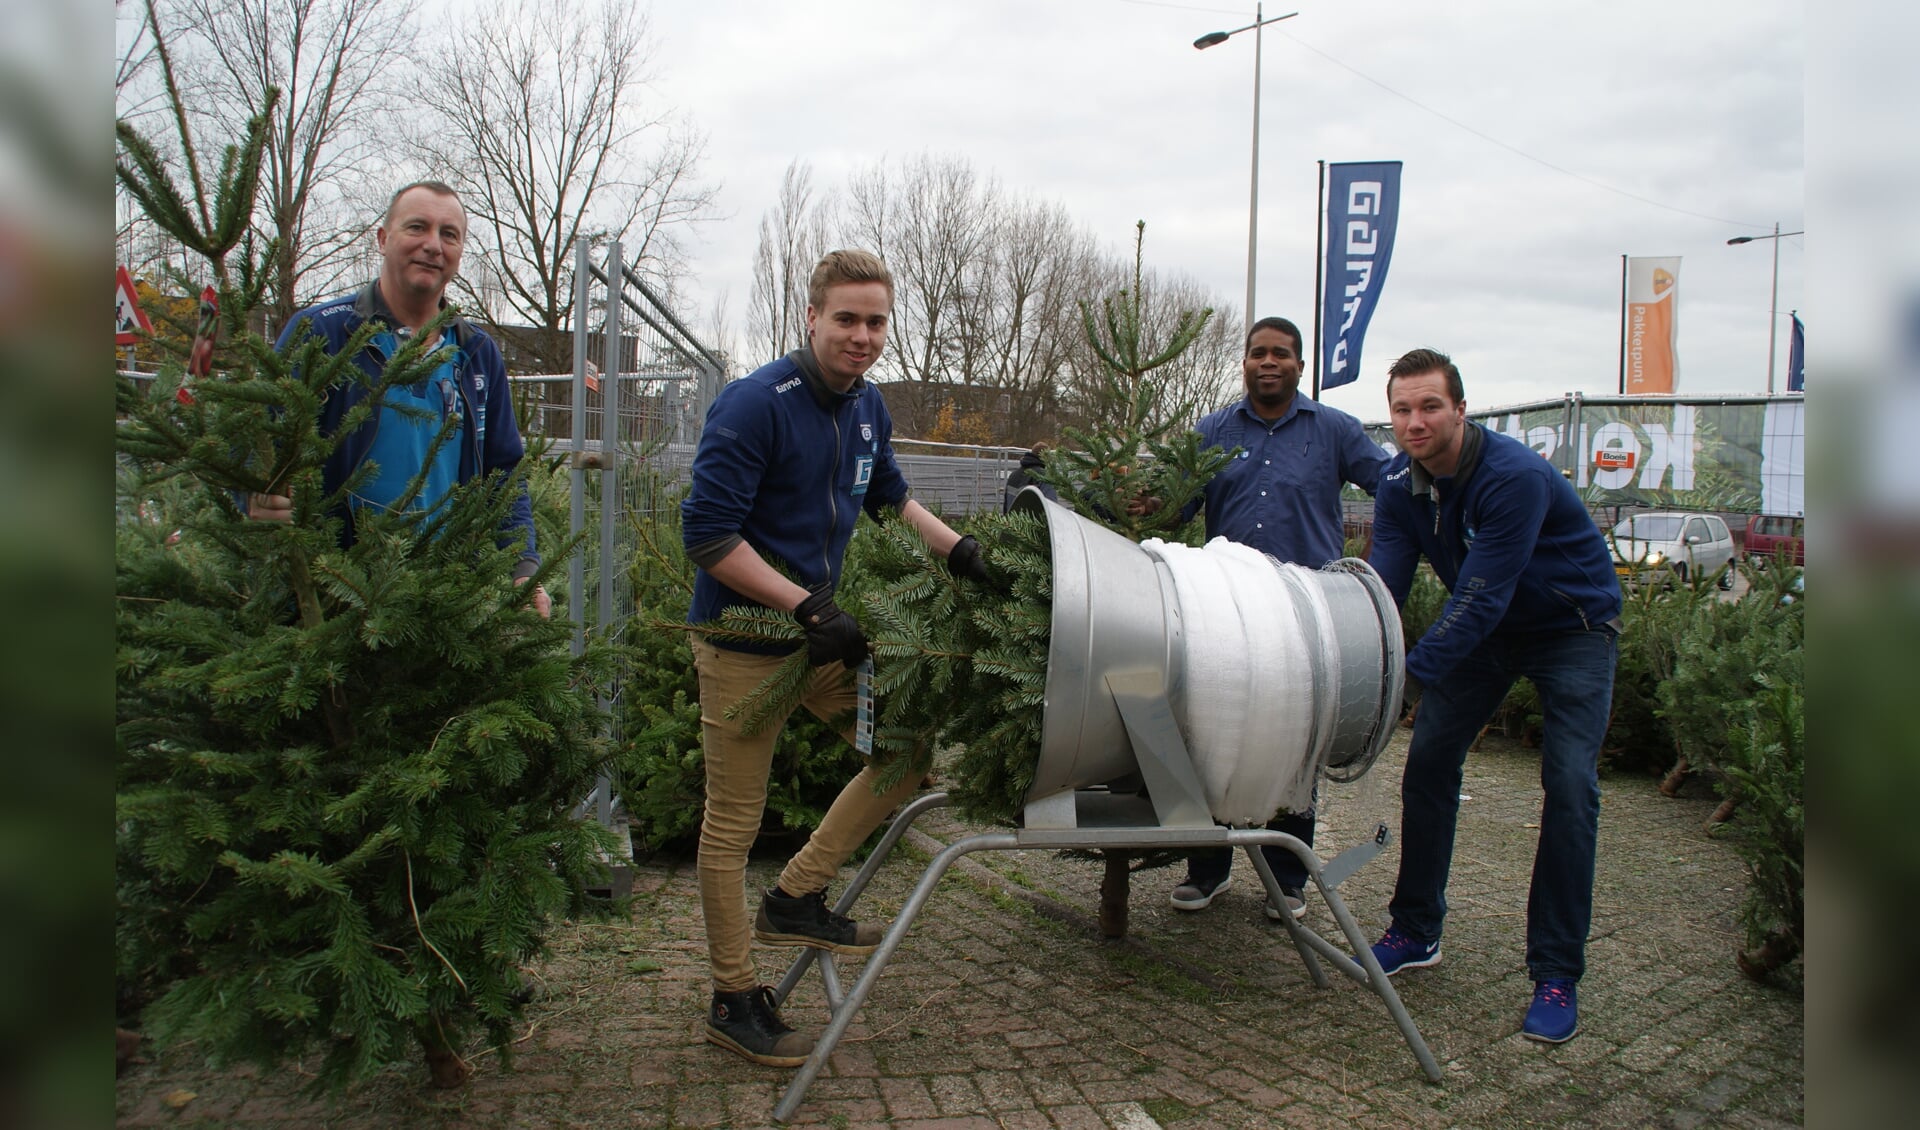 Het team kerstbomenverkoop van Gamma Delft, met van links naar rechts: Erwin, Jeffrey, Piëtro en Timo.